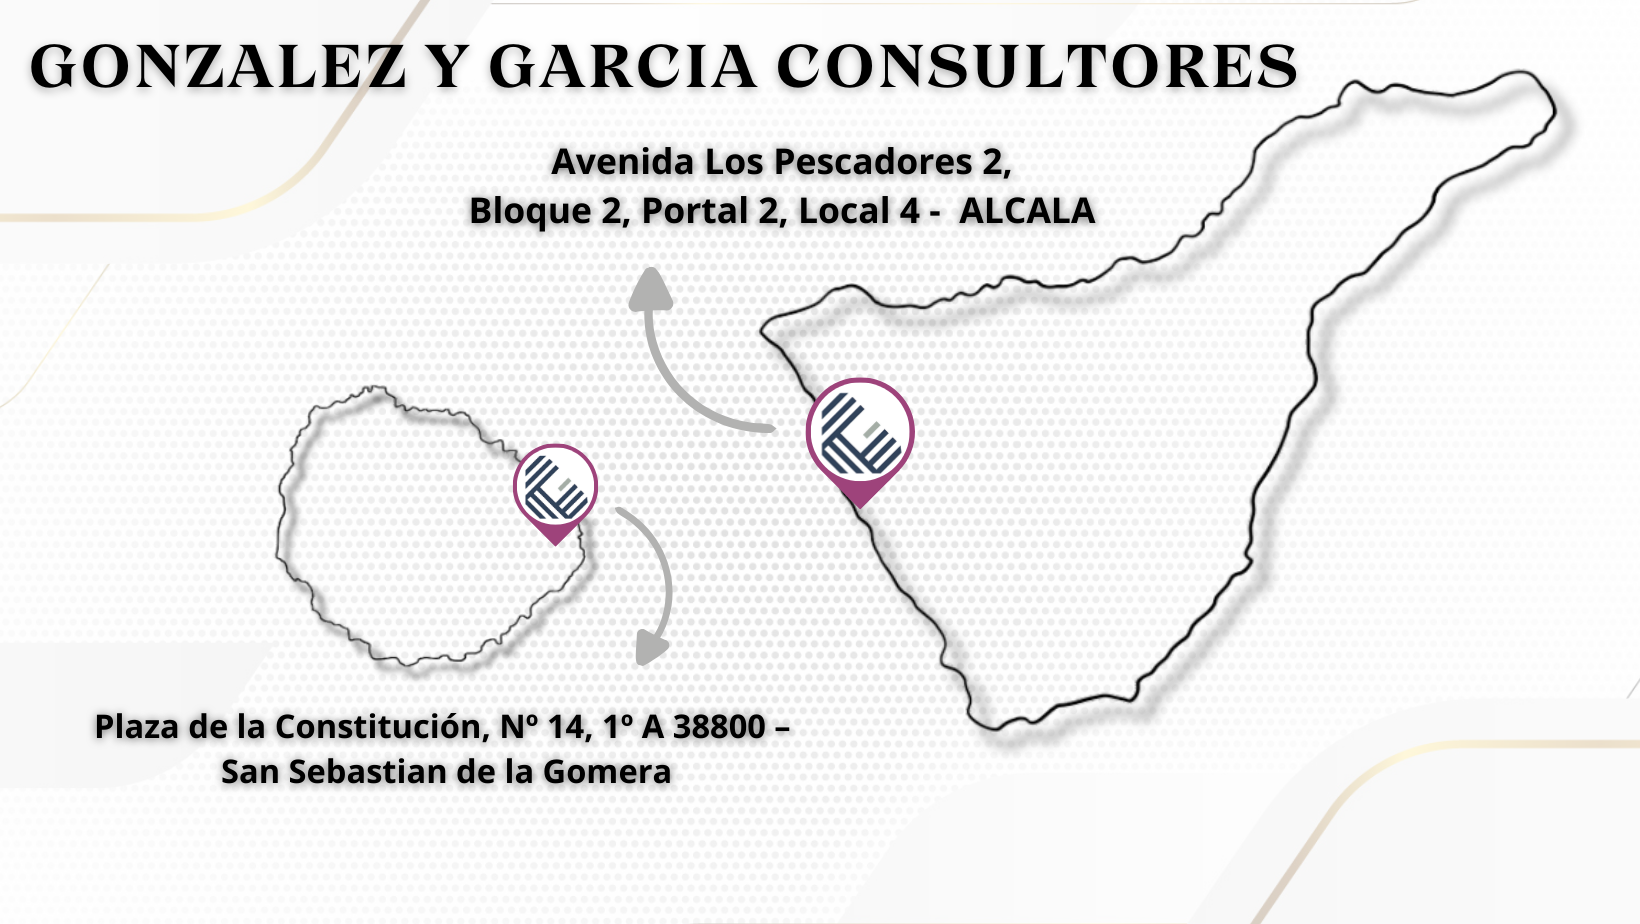 GONZALEZ Y GARCIA CONSULTORES, S.L